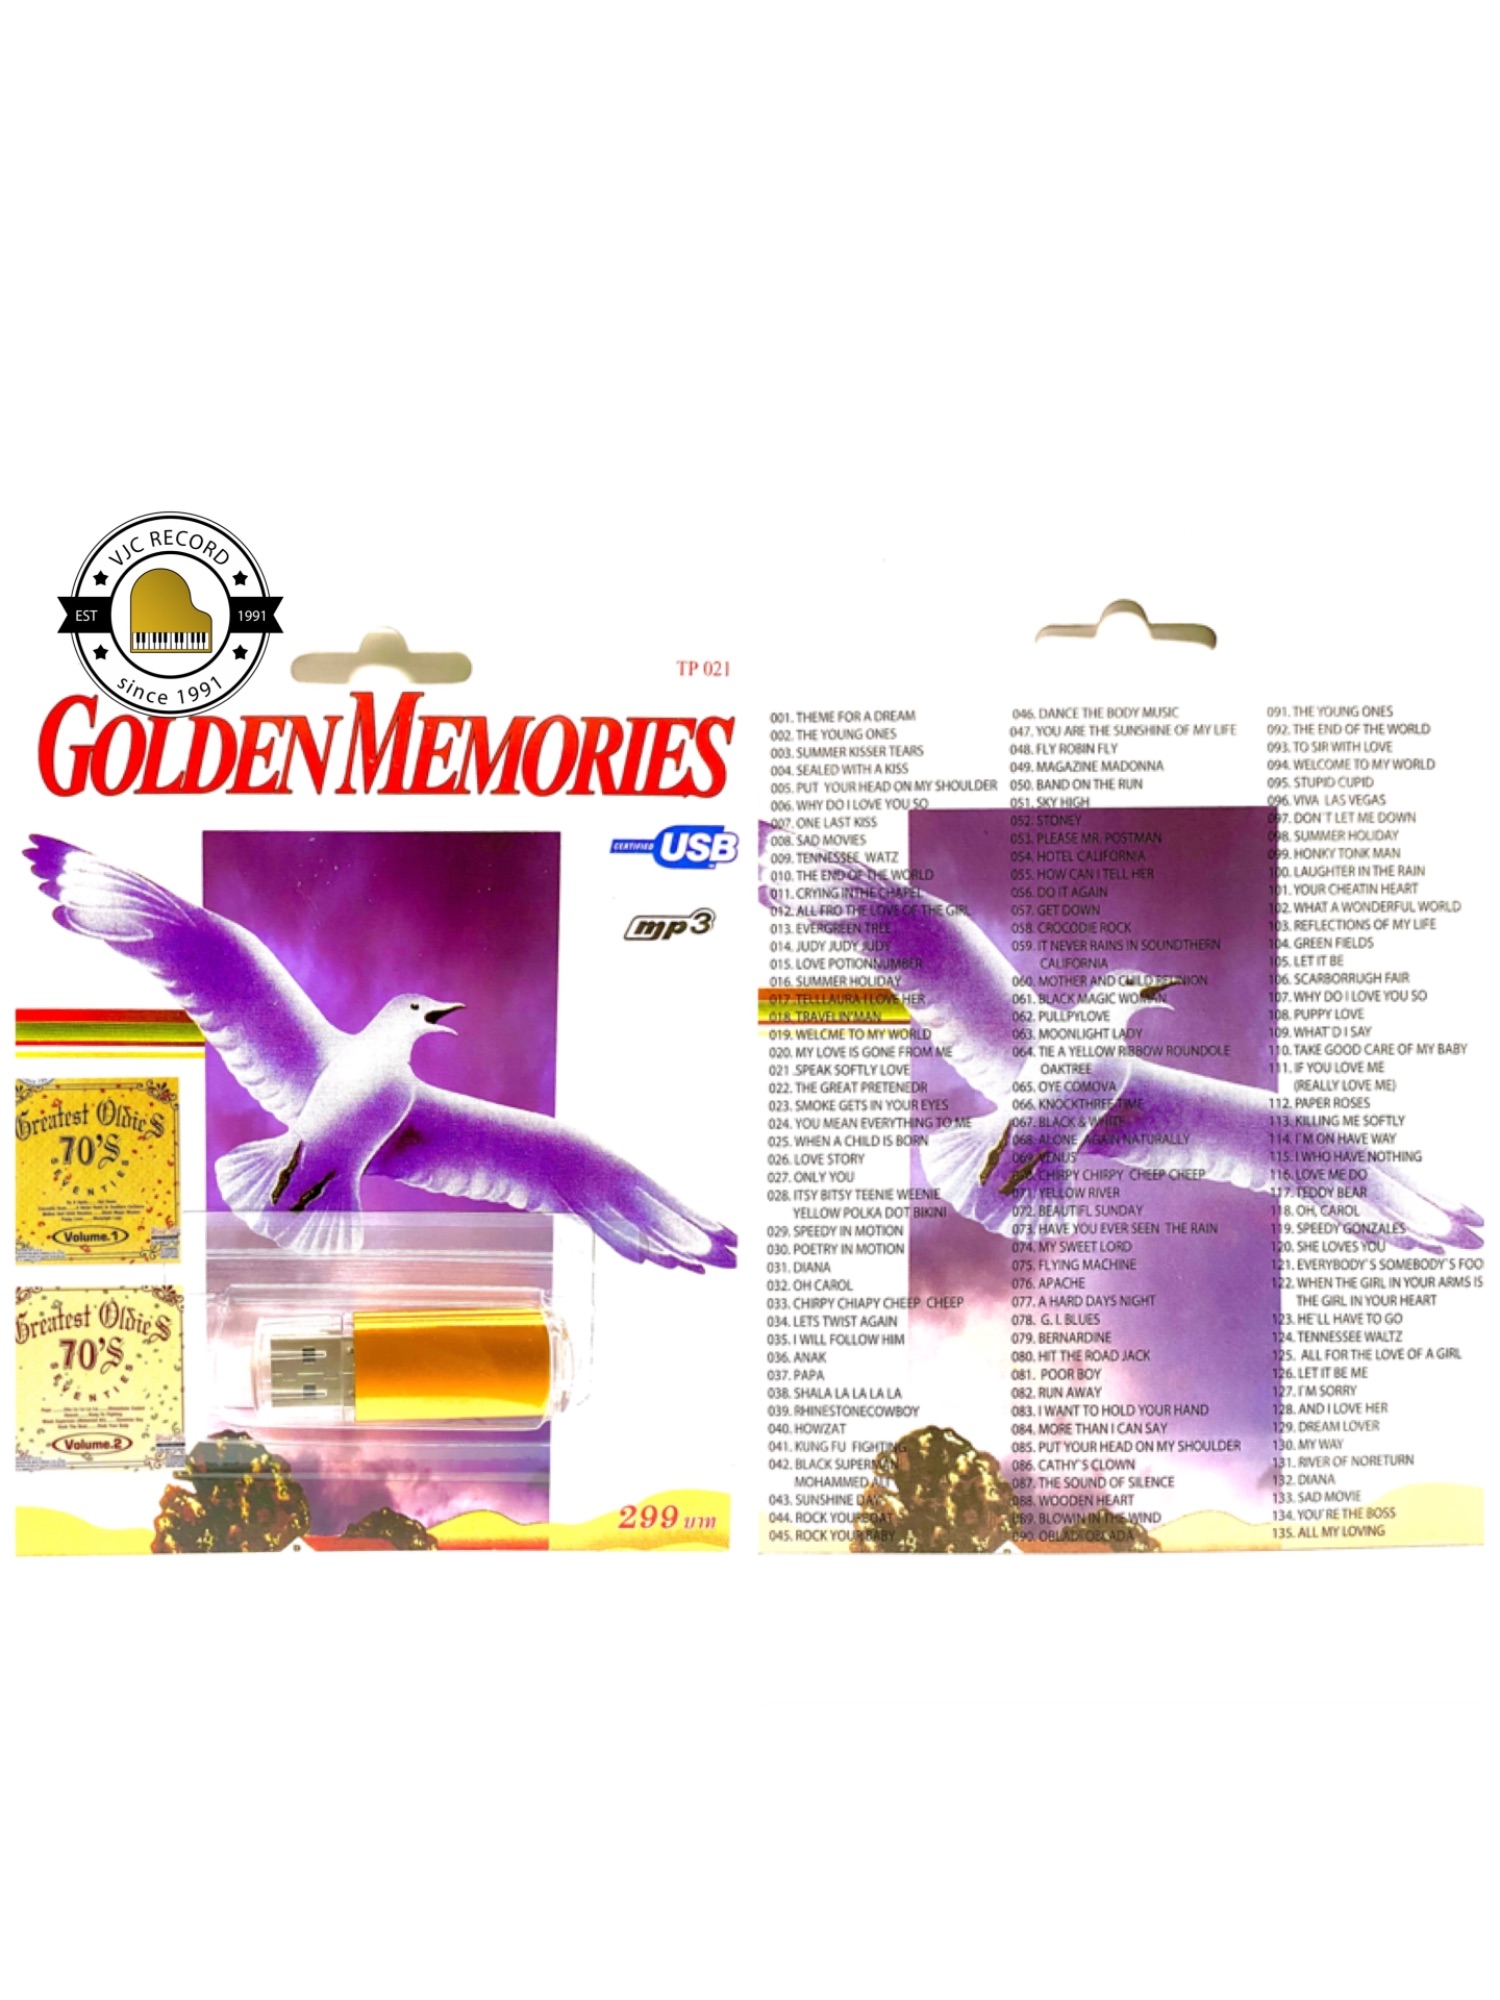 (หมดแล้วหมดเลย สากลต้นฉบับแท้) สุดคุ้มเสียบฟังได้เลย!! USB Mp3 แฟลชไดร์ฟ รวม 135 เพลงสากลต้นฉบับ Golden memories